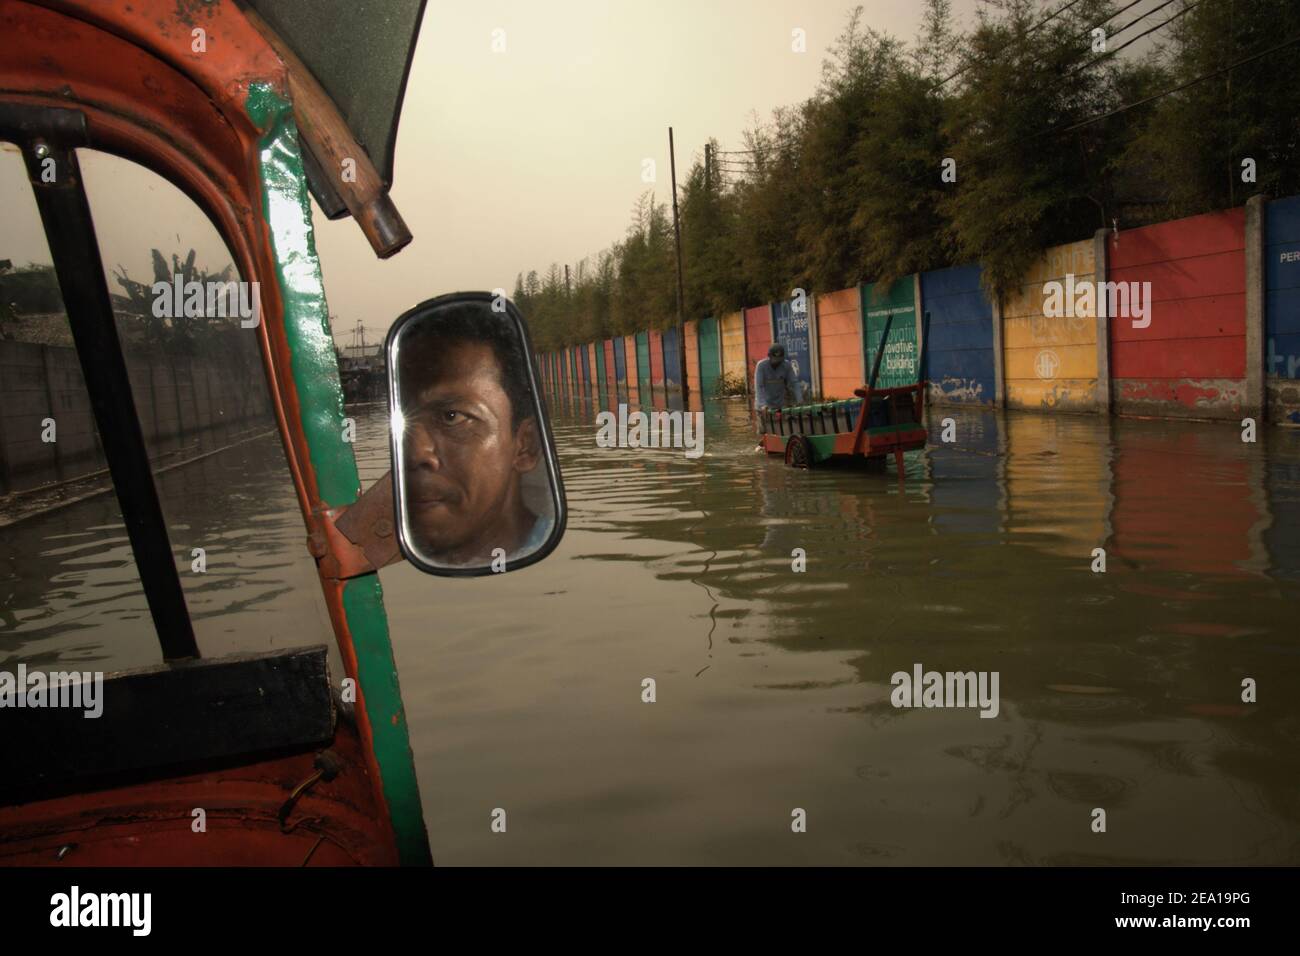 Un chauffeur d'autopousse transportant des passagers dans une rue inondée d'eau de mer, passant par un ambulant d'eau douce dans la région de Muara Baru, dans la zone côtière de Jakarta, en Indonésie. Banque D'Images